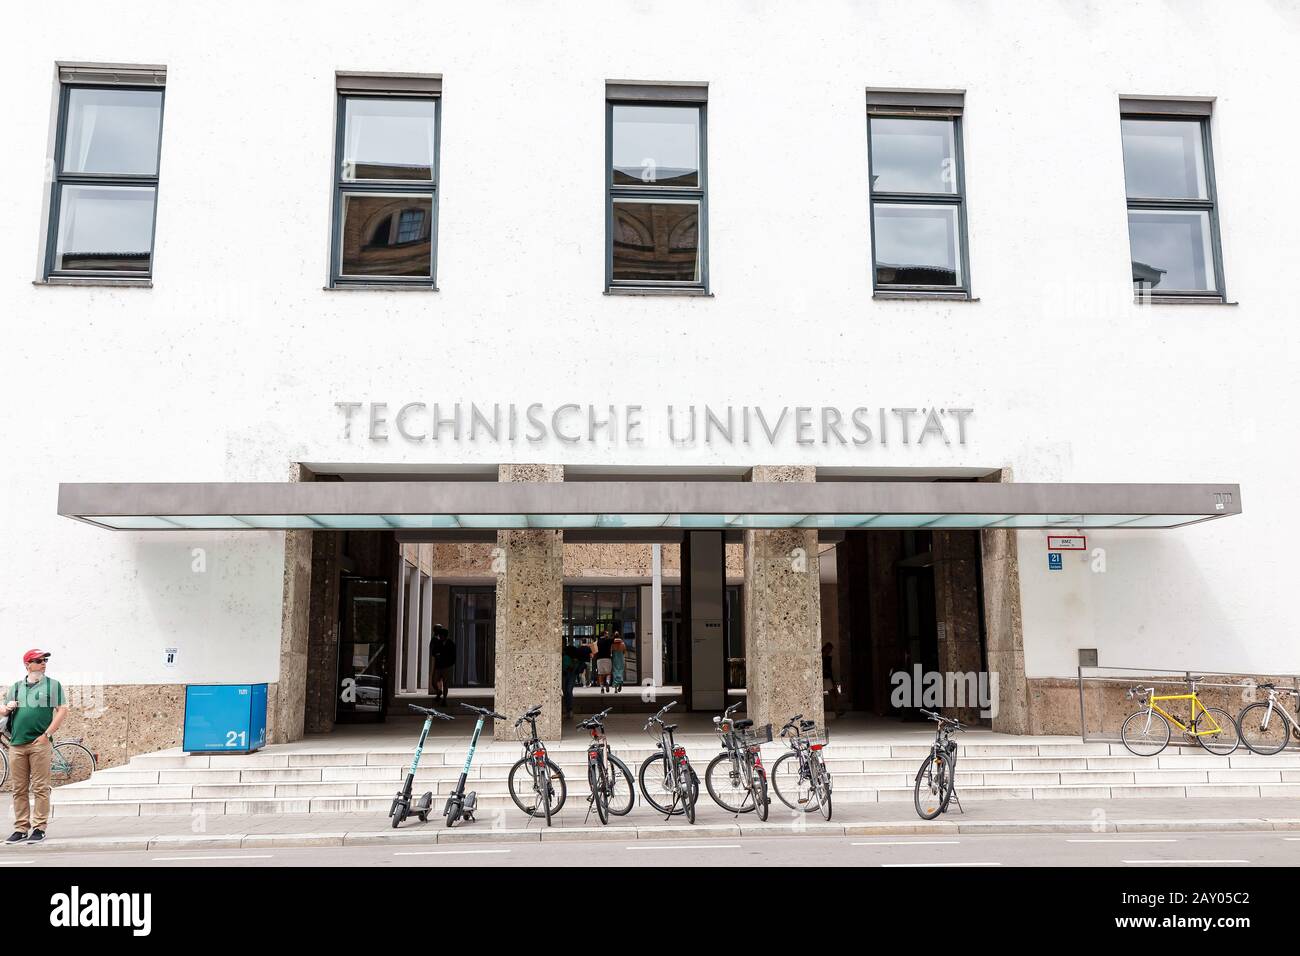 07 de agosto de 2019, Munich, Alemania: El edificio de la Universidad Técnica de Munich Foto de stock